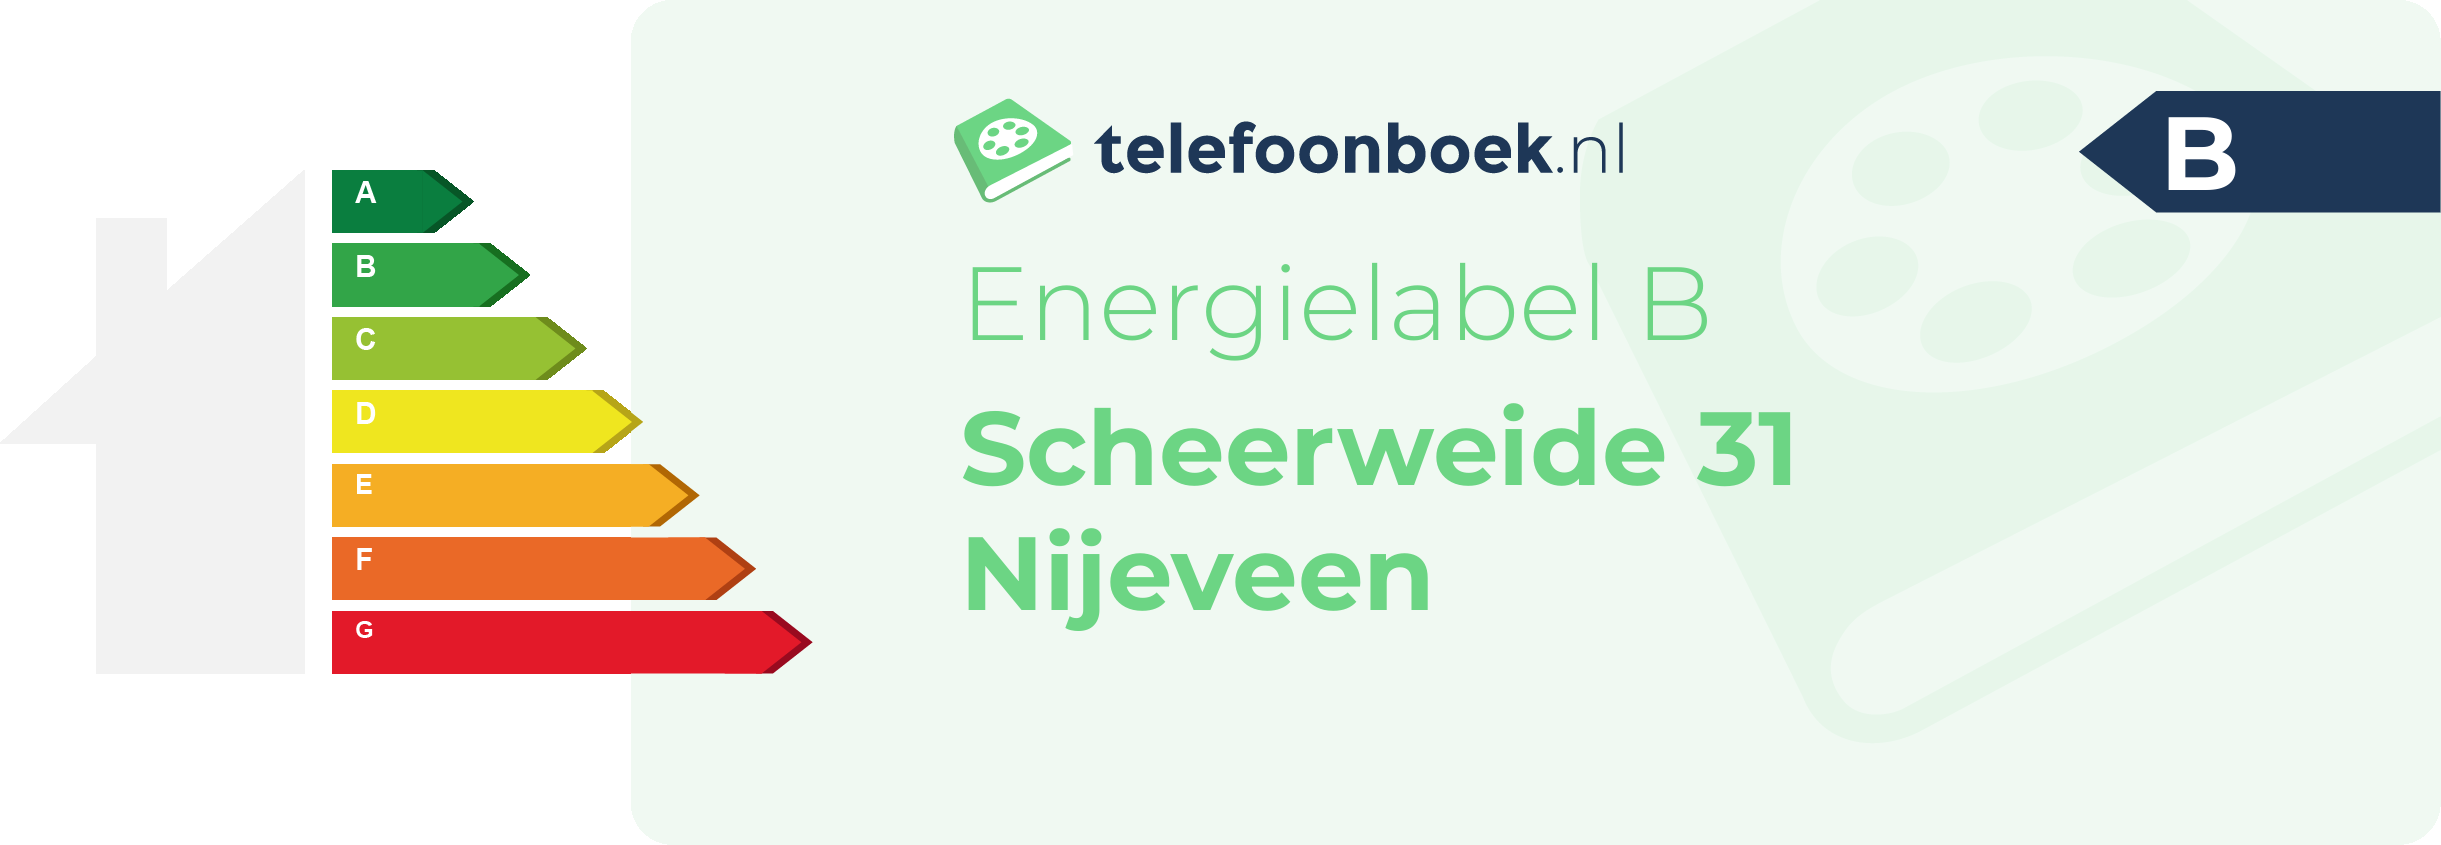 Energielabel Scheerweide 31 Nijeveen